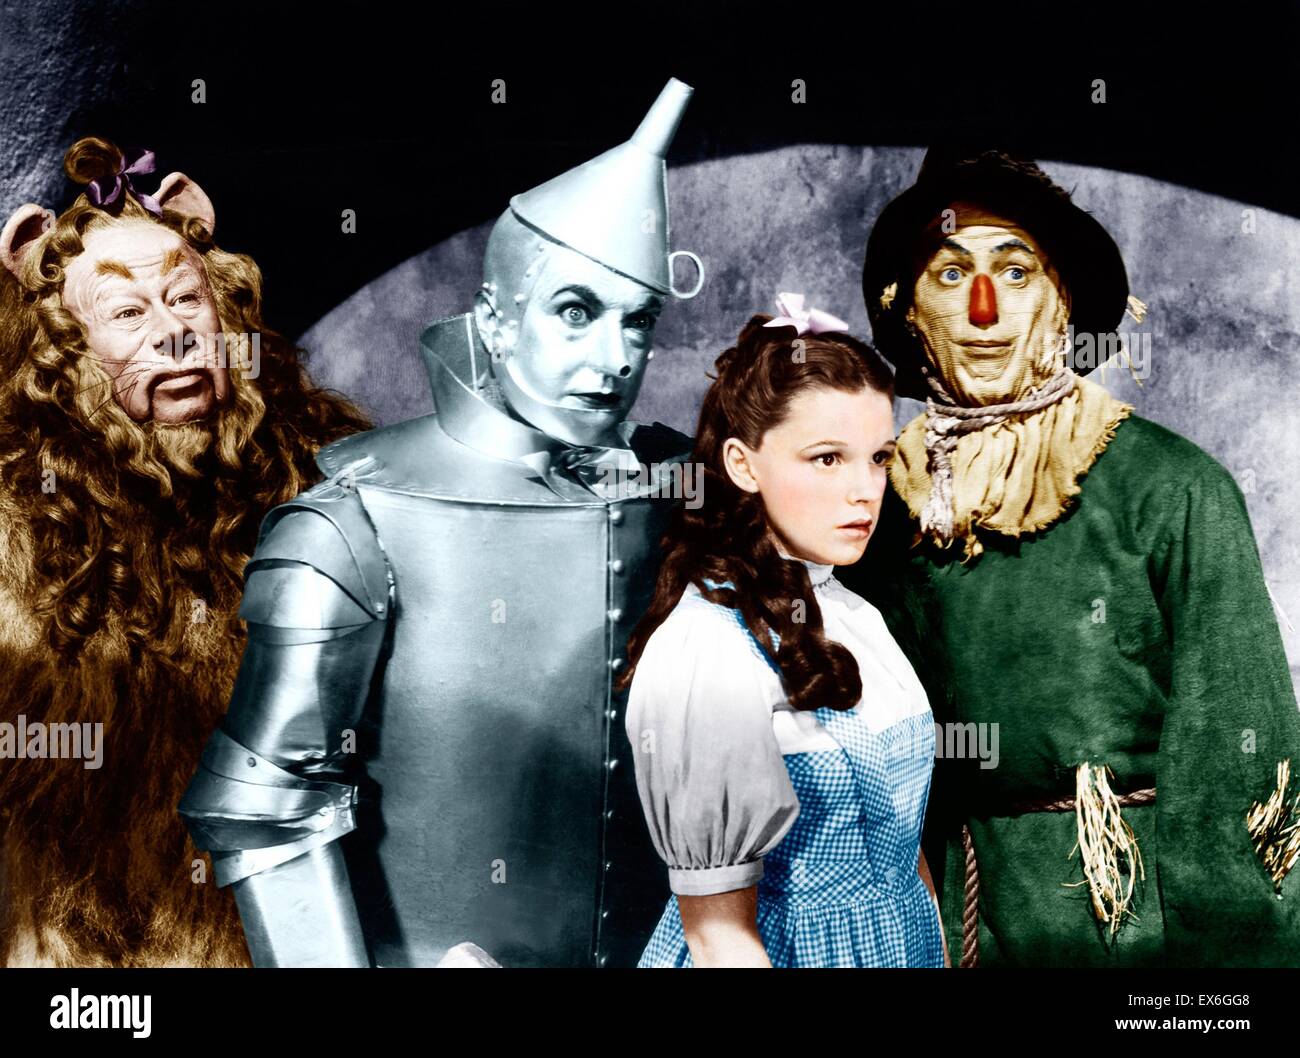 The Wizard of Oz è un 1939 American musical fantasy film prodotto dalla Metro Goldwyn Mayer, e il più noto e commercialmente adattamento con successo sulla base del 1900 romanzo The Wonderful Wizard of Oz da L. Frank Baum. Il film stelle Judy Garland; Terr Foto Stock